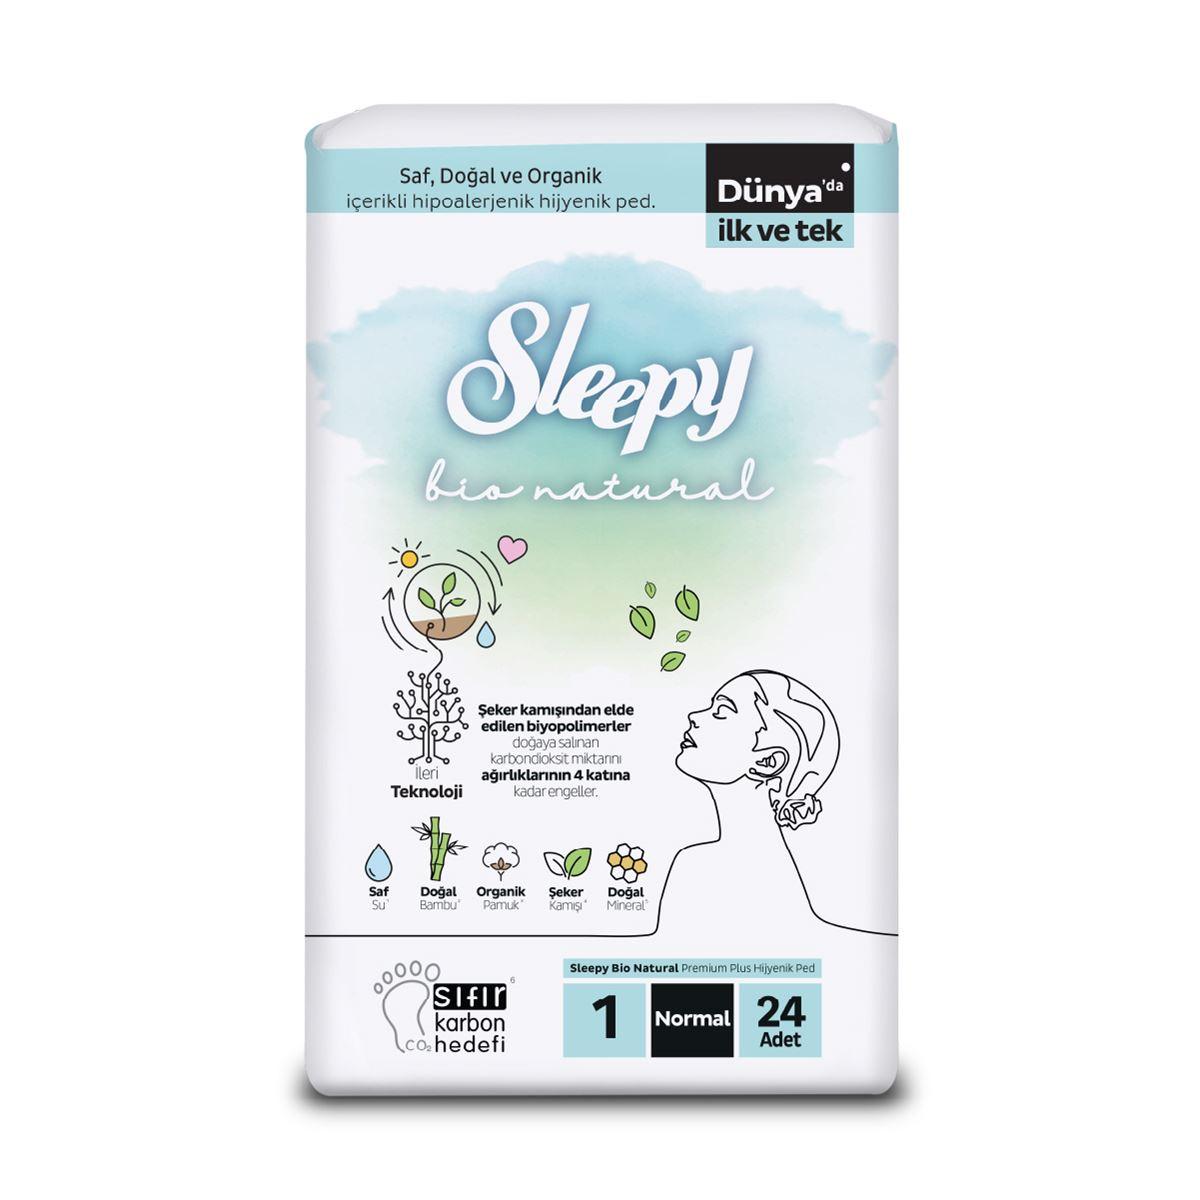 Sleepy Bio Natural Premium Plus Hijyenik Ped Normal 24x6 144 Adet Ped